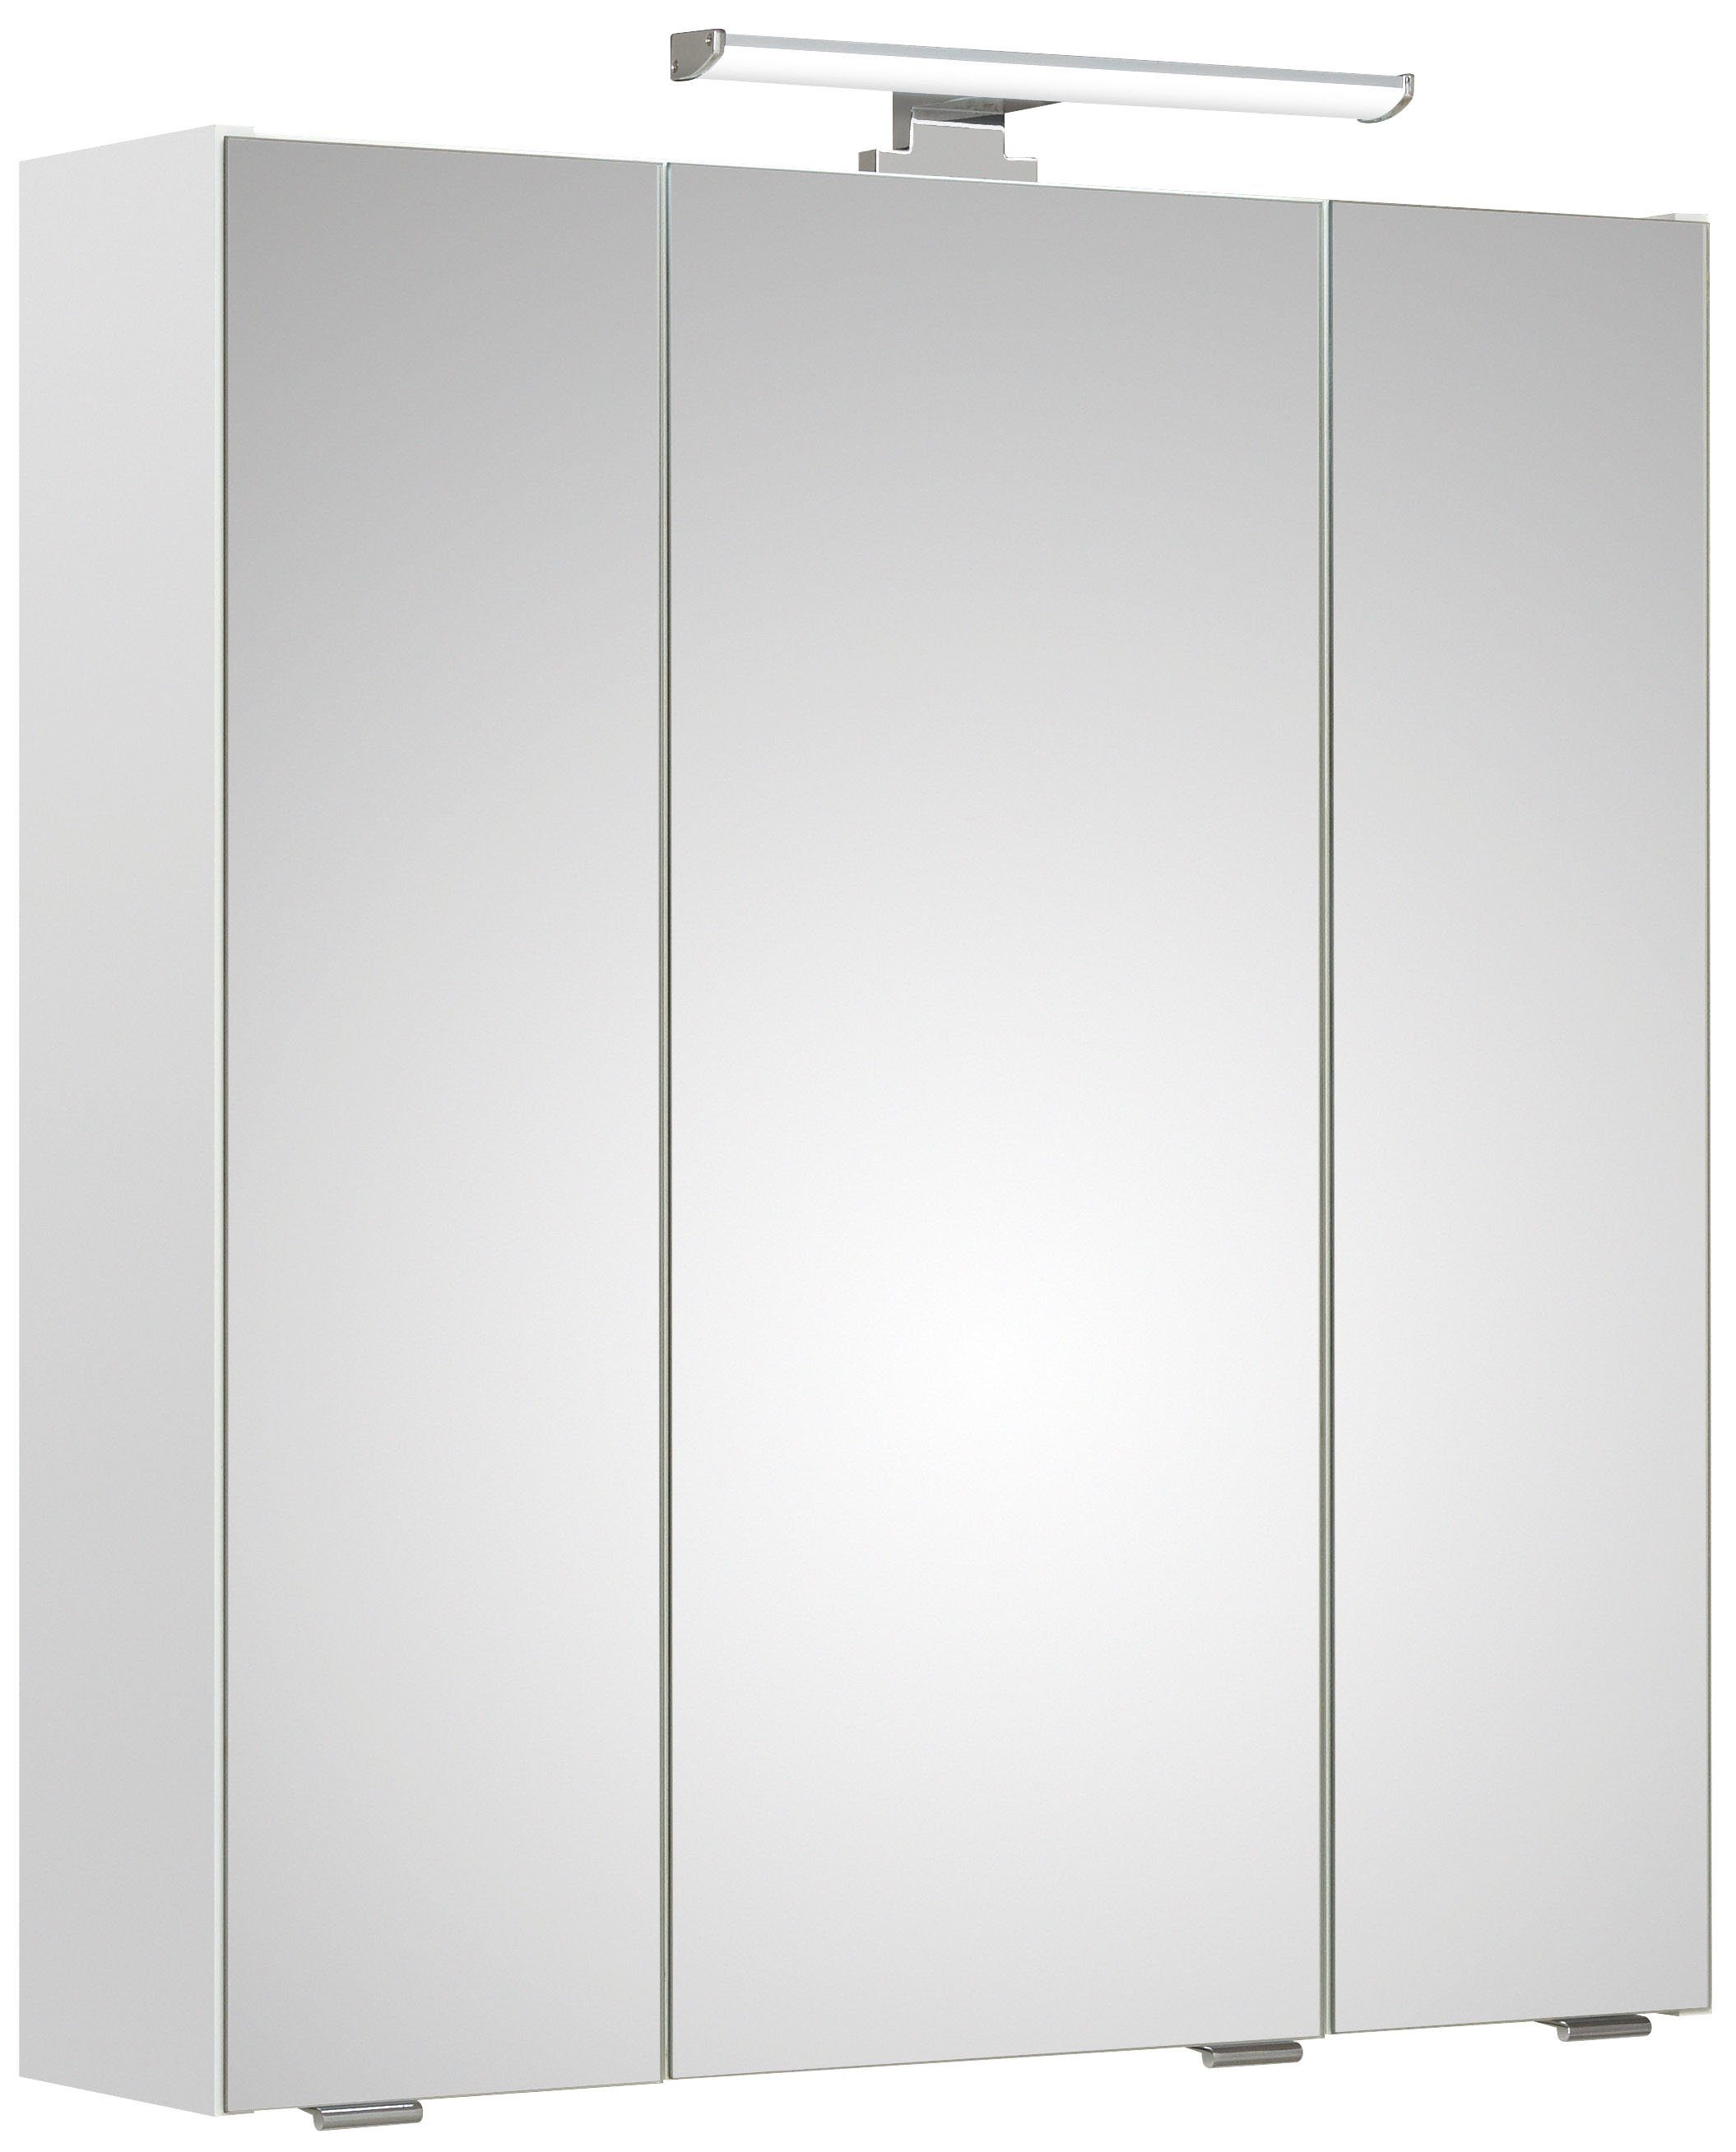 PELIPAL Spiegelkast Quickset Breedte 65 cm, 3-deurs, ledverlichting, schakelaar/contactdoos, deurdemper